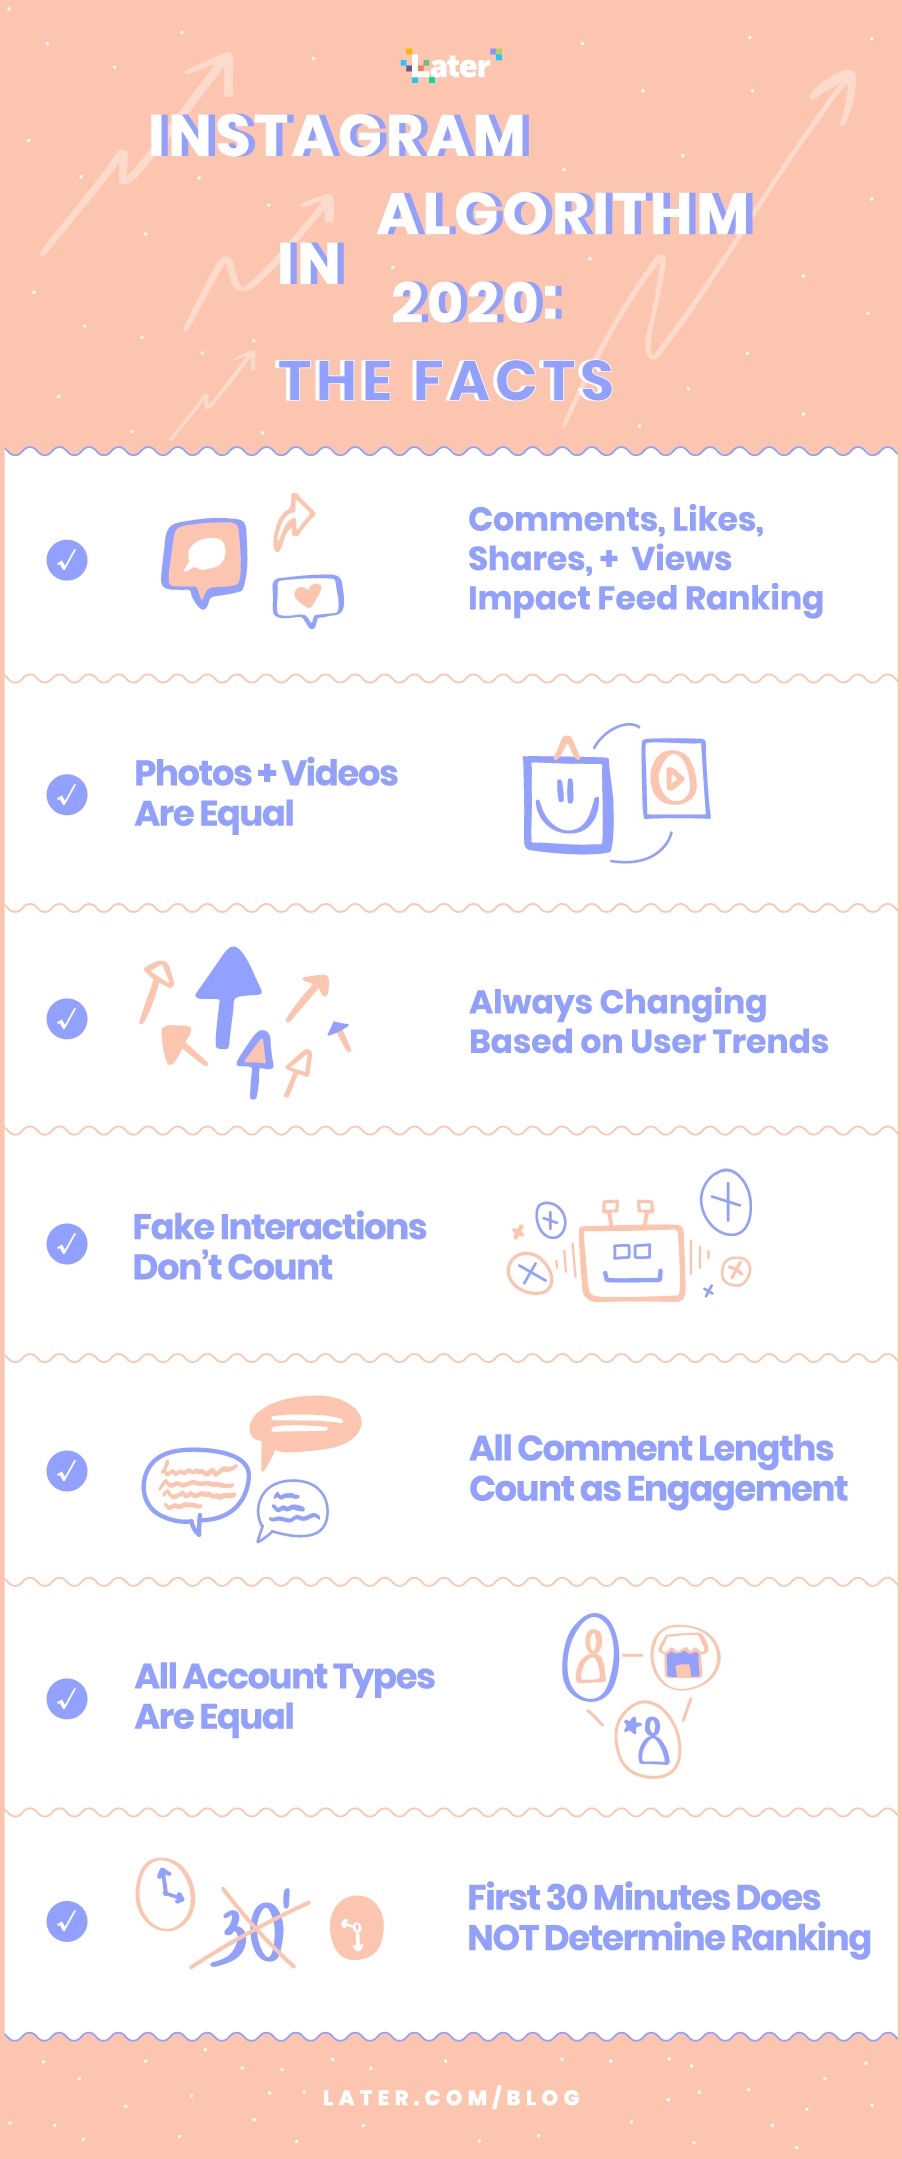 12 Expert Instagram Marketing Tips for eCommerce [Full Guide]